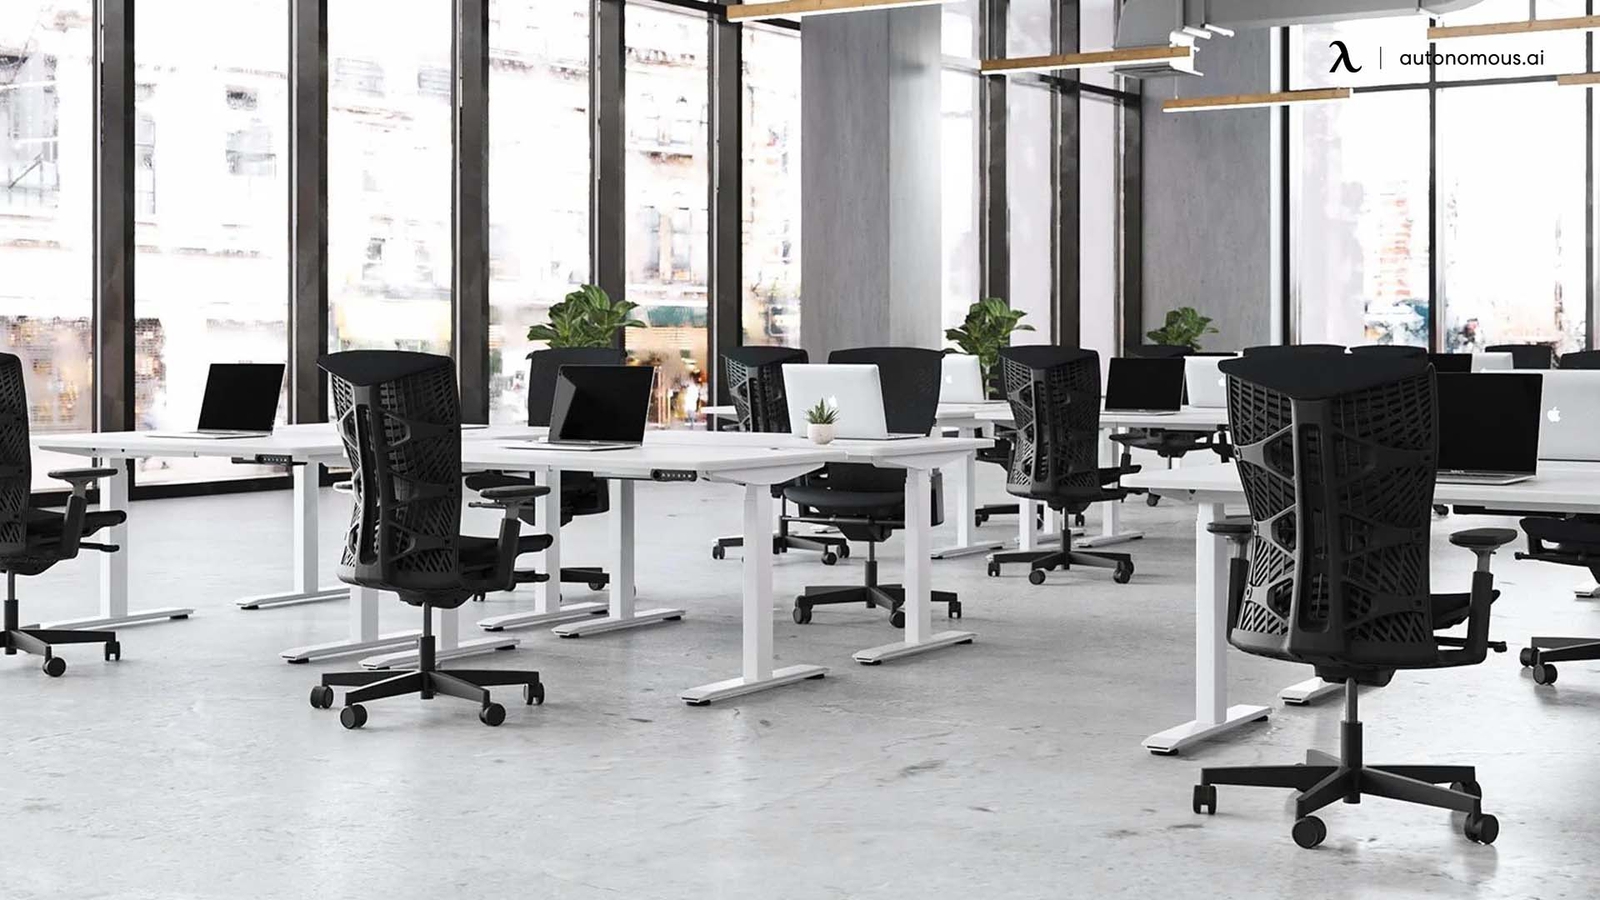 7 Standing Desks That Can Help You Design a Hybrid Desk Station